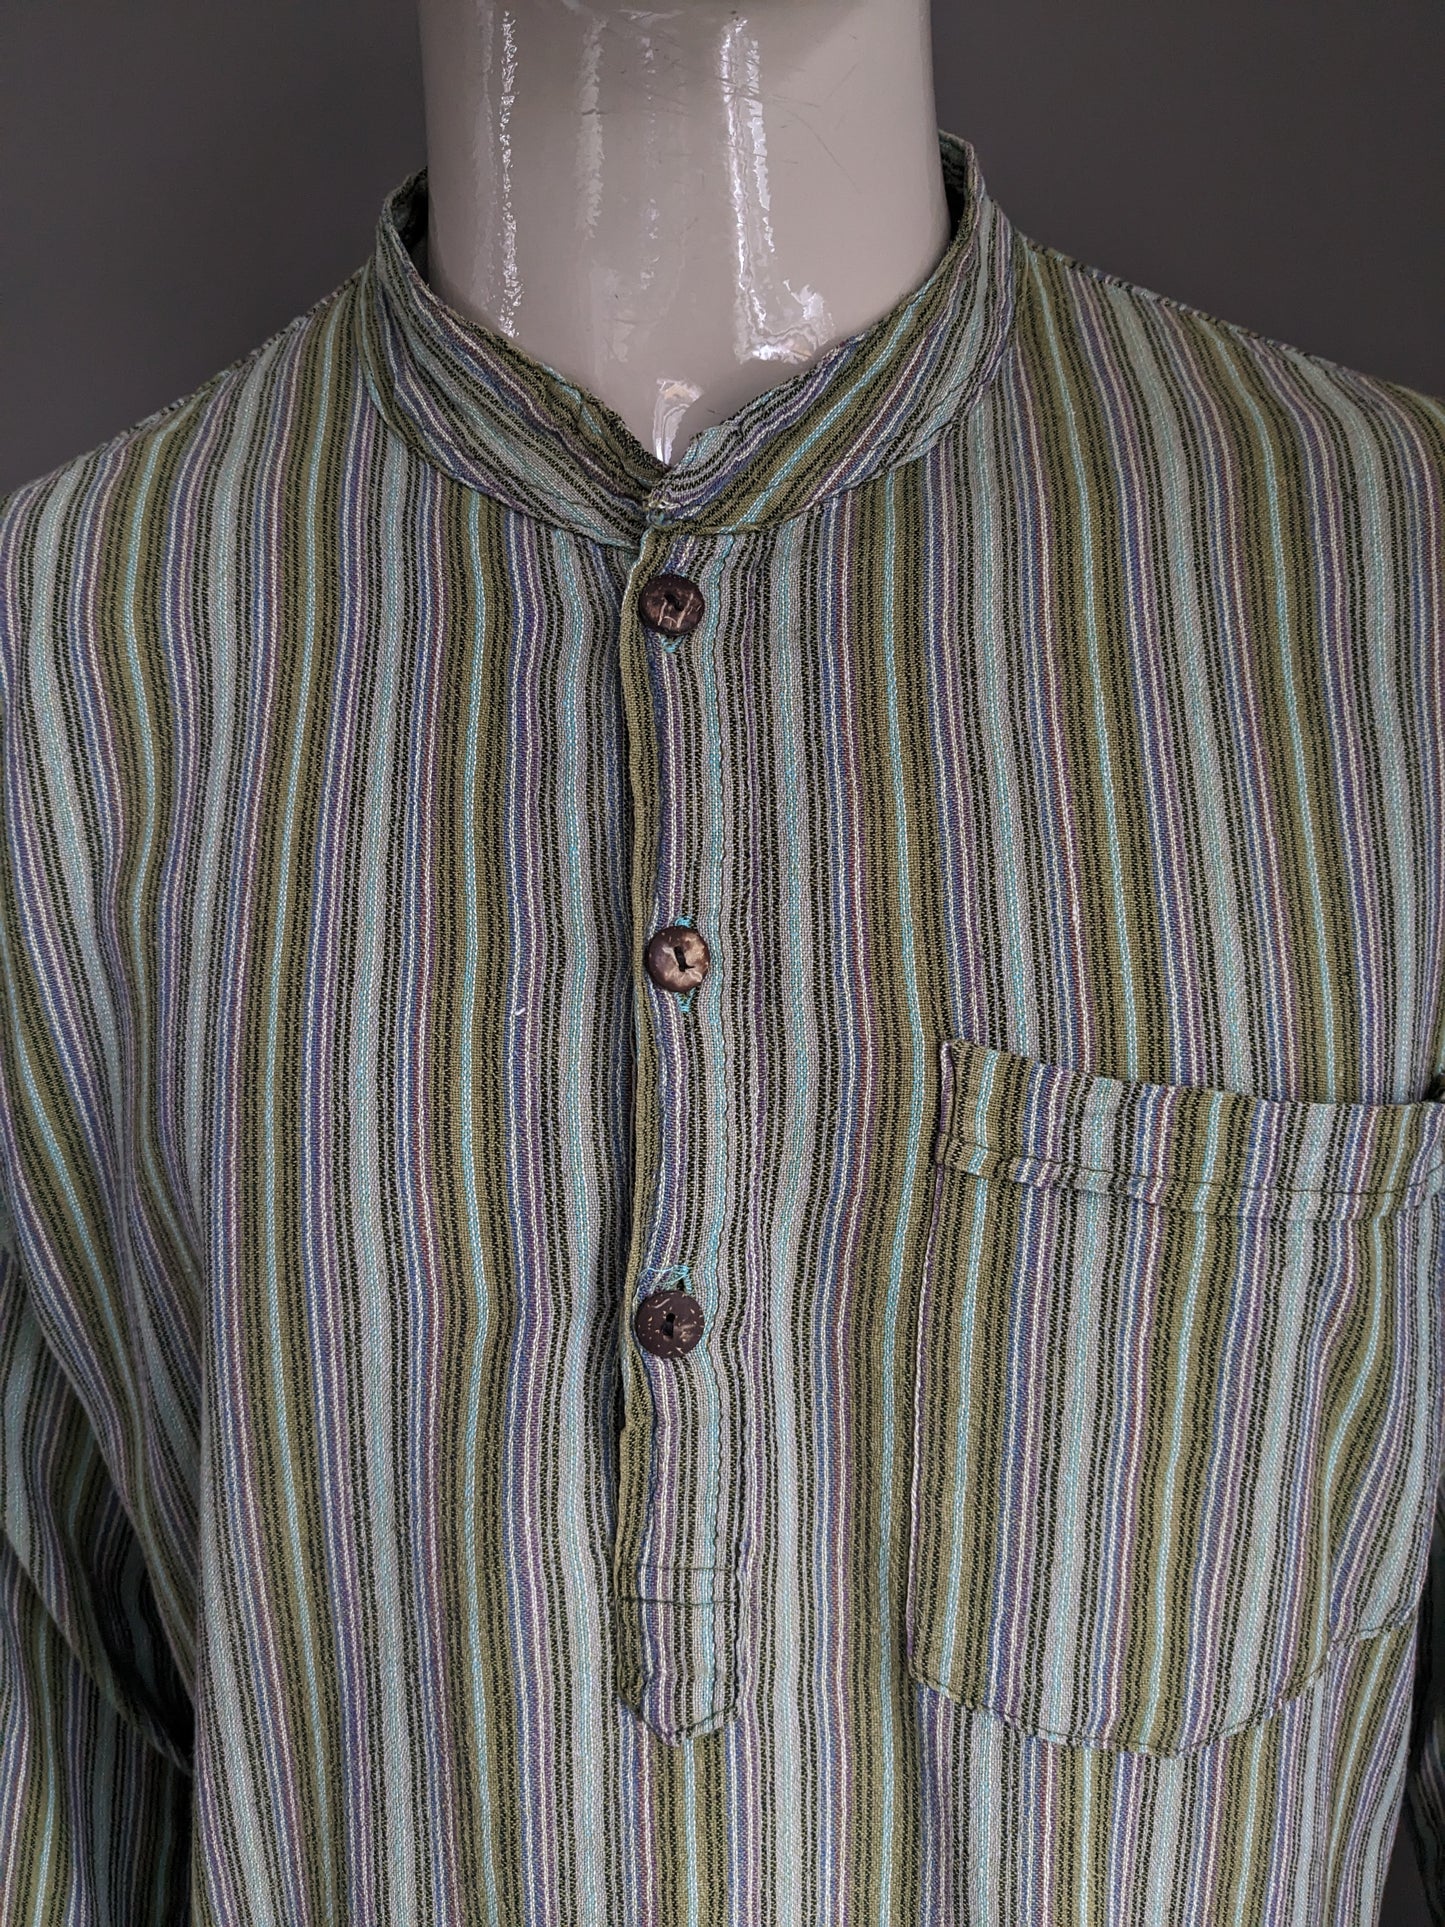 Pull / chemise de polo vintage avec collier surélevé / agriculteurs / mao. Green violet brun bleu rayé avec sac. Taille xl.